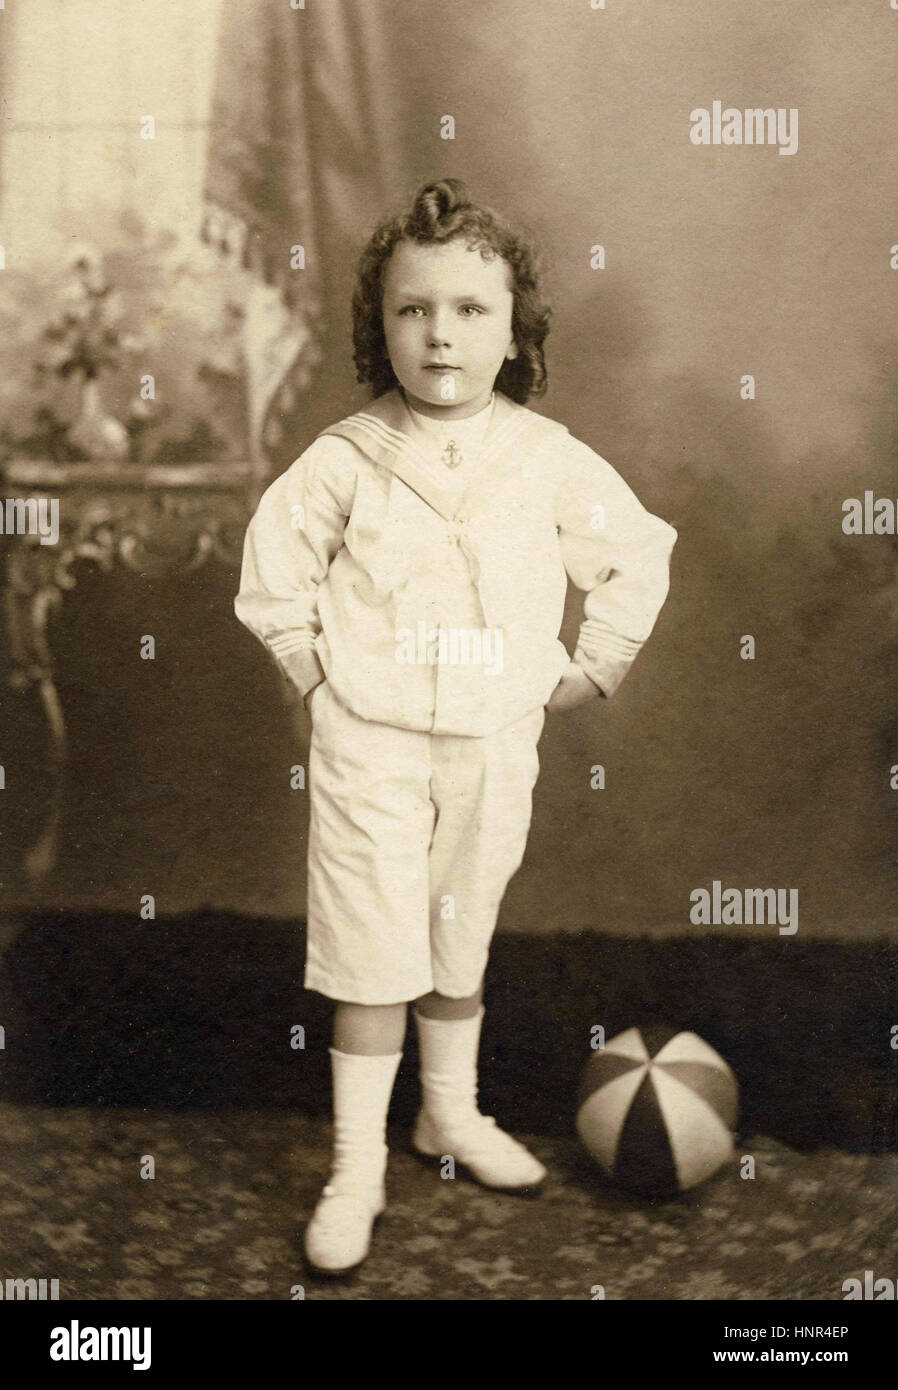 Archiv Bild - Edwardian Periode Porträt eines jungen Matrosen Anzug mit lockigem Haar Stockfoto